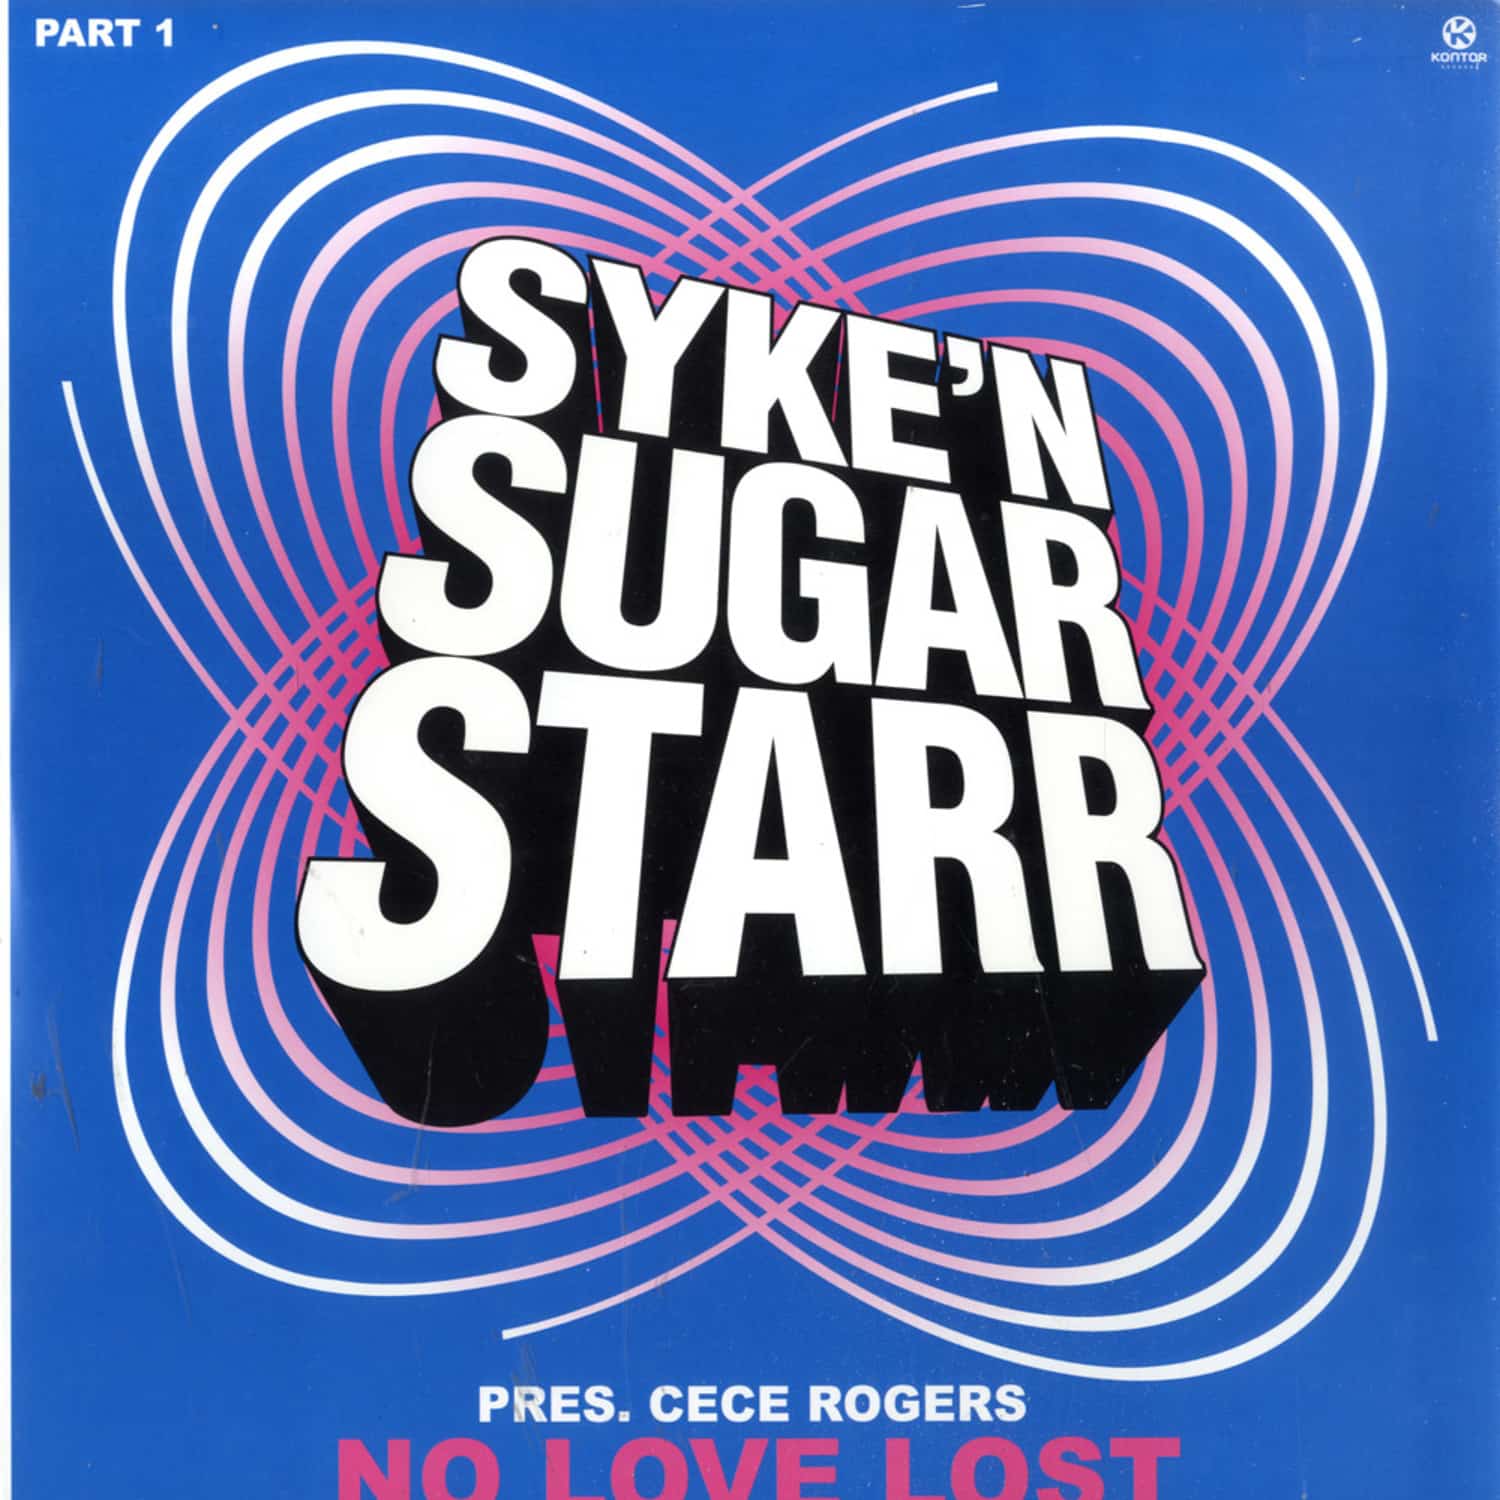 Syke n Sugarstarr Pres Cece Rogers - NO LOVE LOST